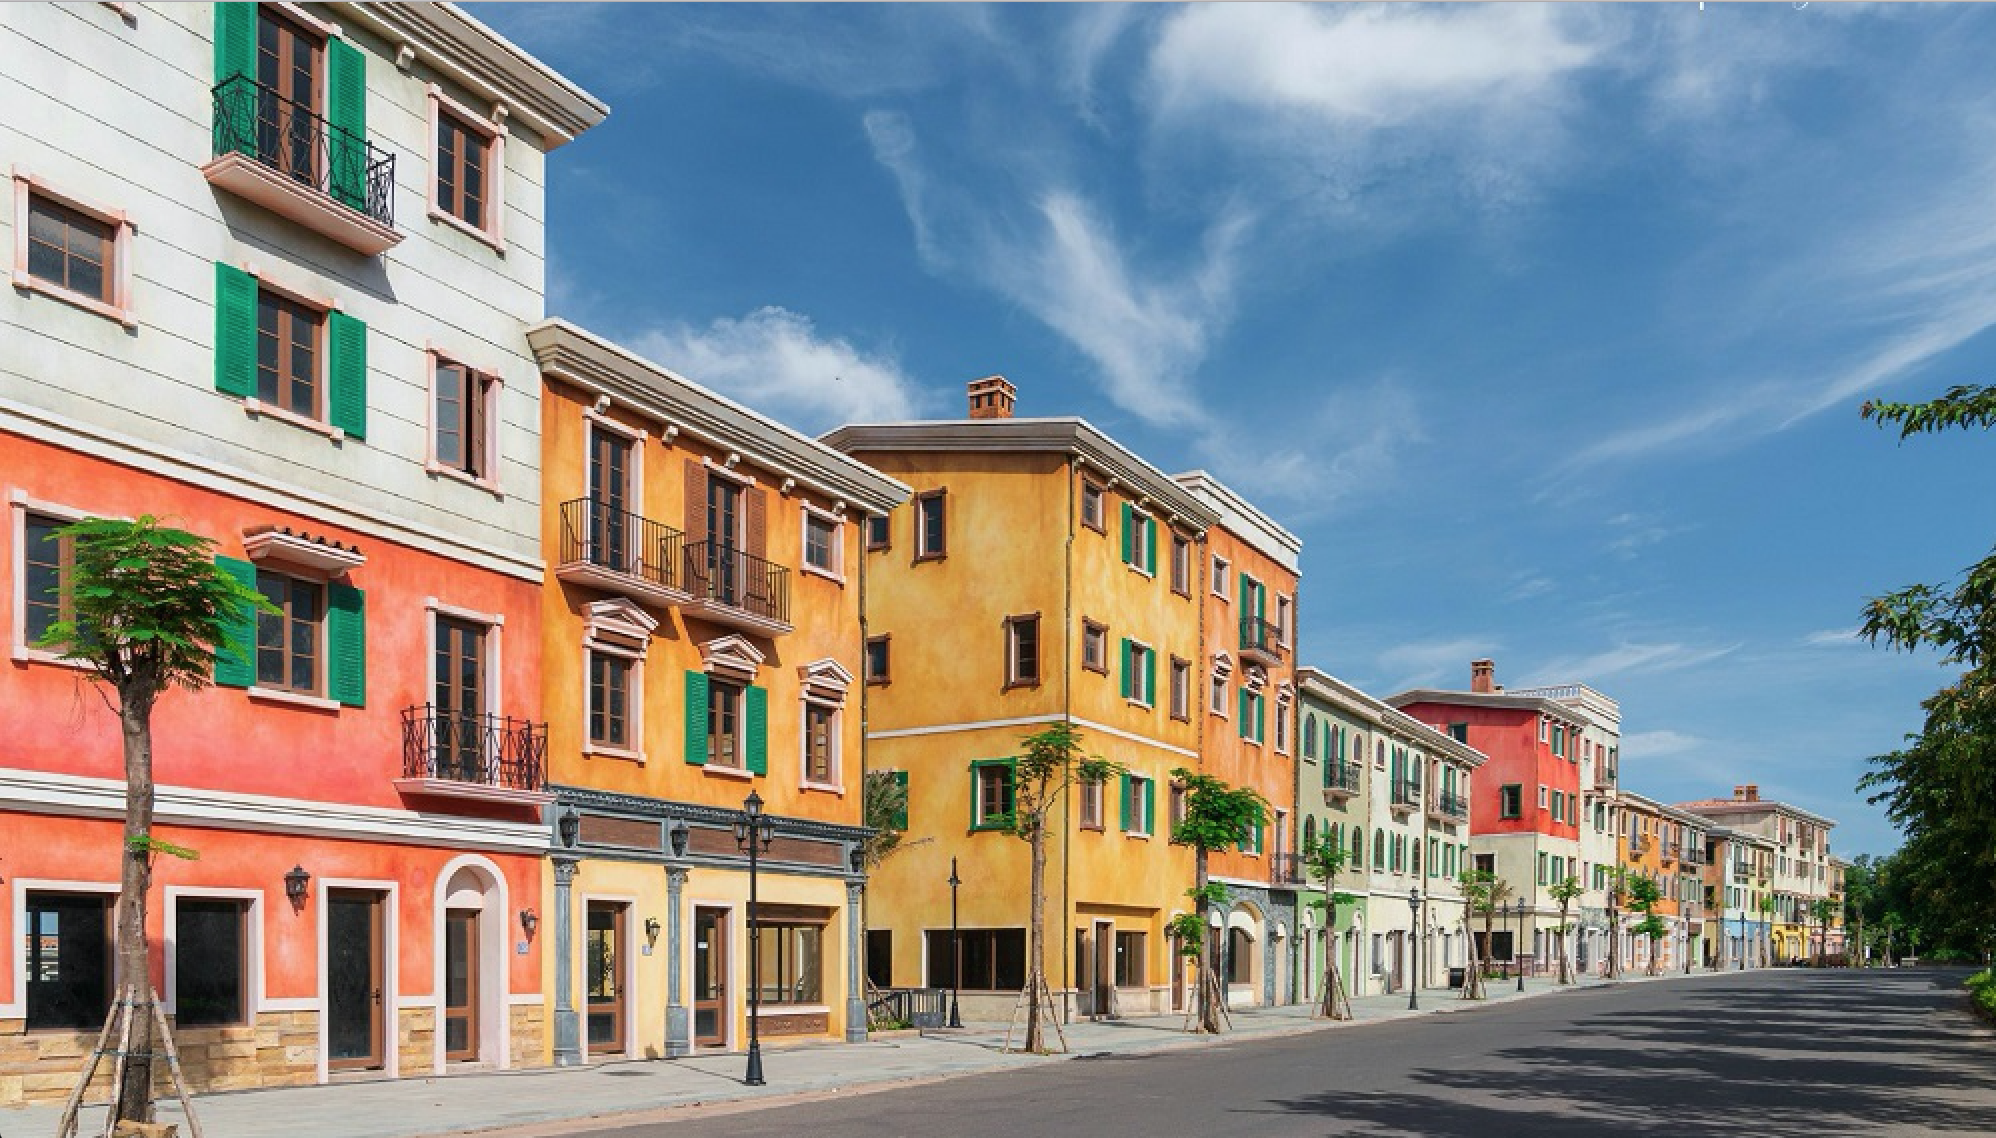 Hình ảnh thực tế Shophouse Địa Trung Hải dãy Amalfi trên đường đến ga cáp treo đi Hòn Thơm - Ảnh 2